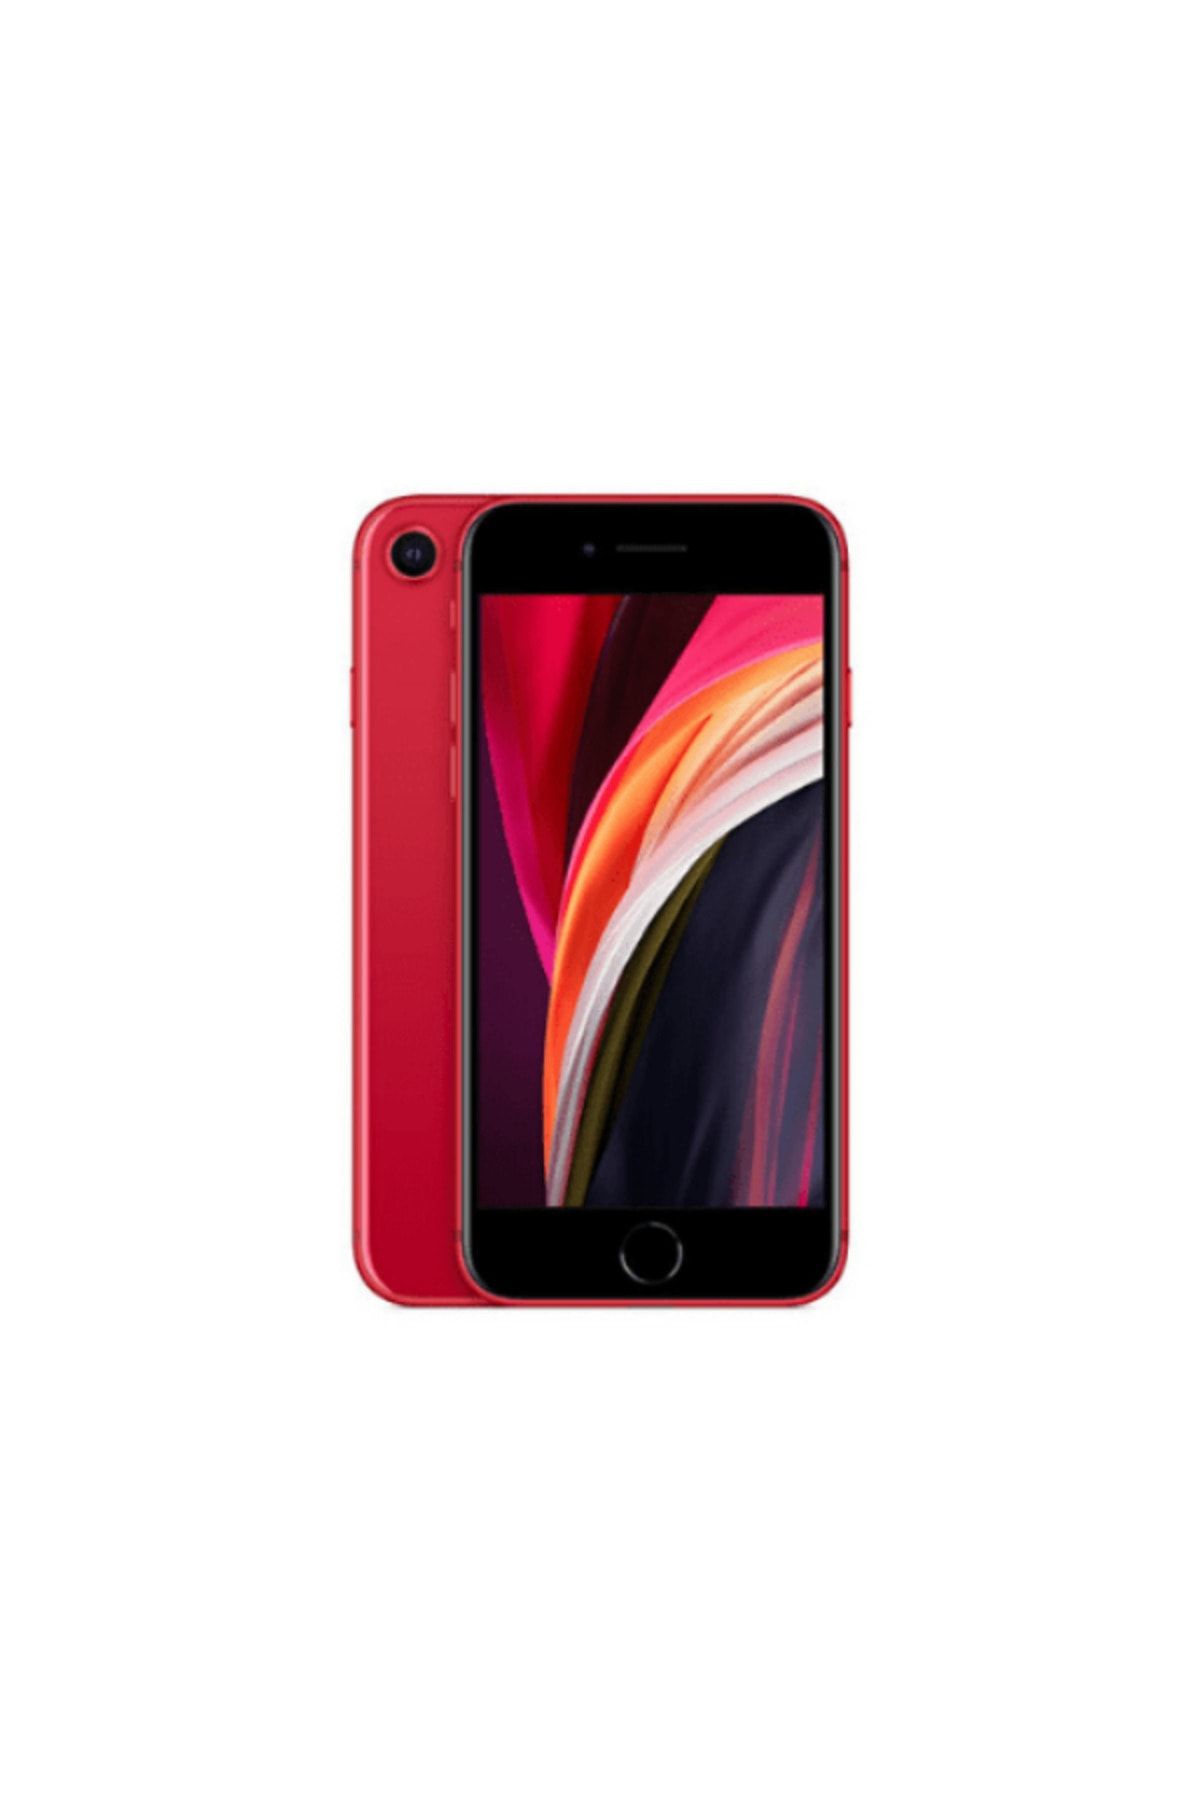 Apple Yenilenmiş iPhone SE 2020 64 GB Kırmızı Cep Telefonu (12 Ay Garantili) - B Kalite